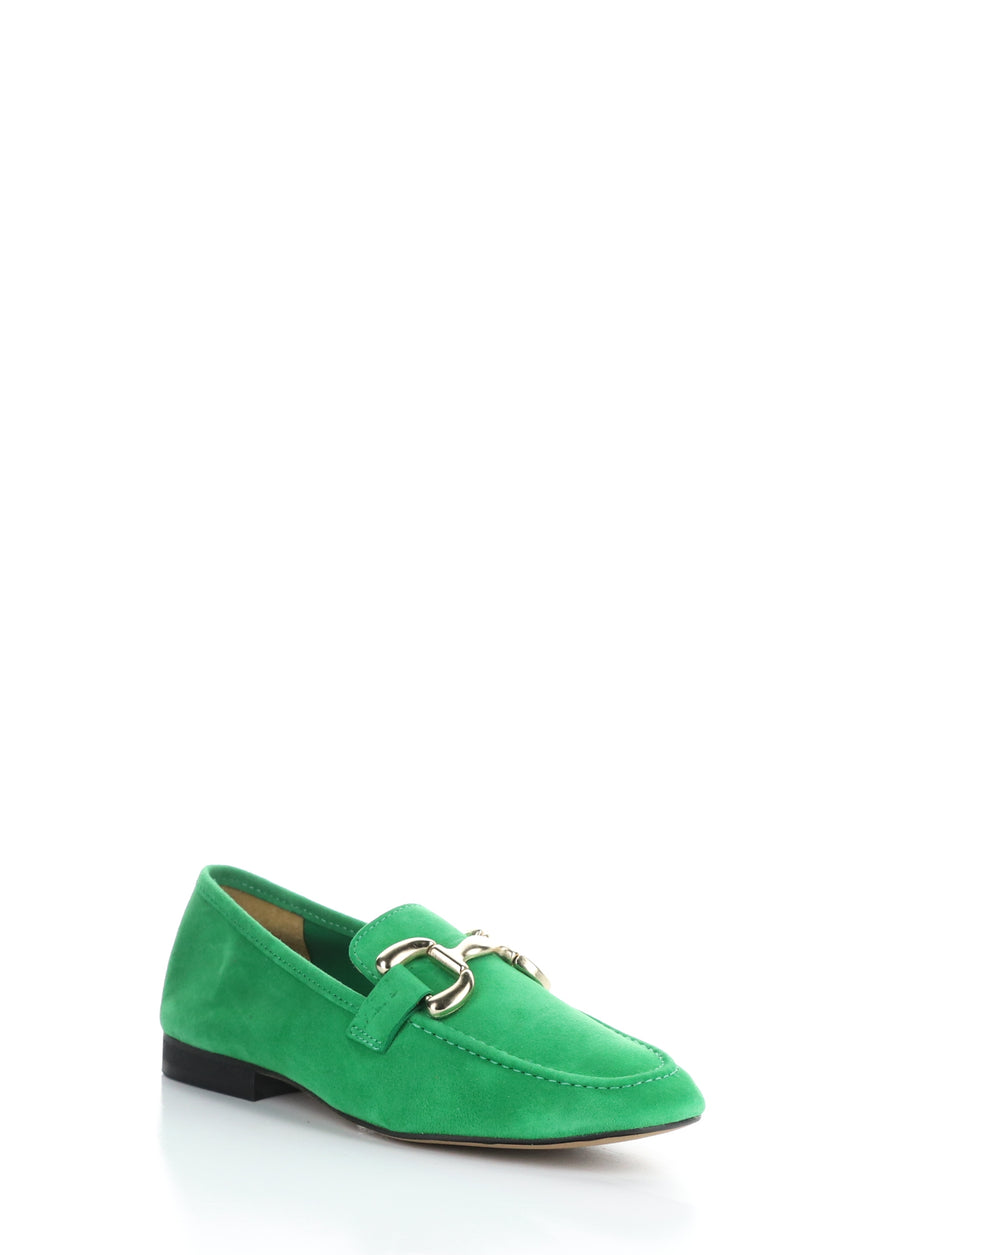 MACIE IRISH GREEN Slip-on Shoes